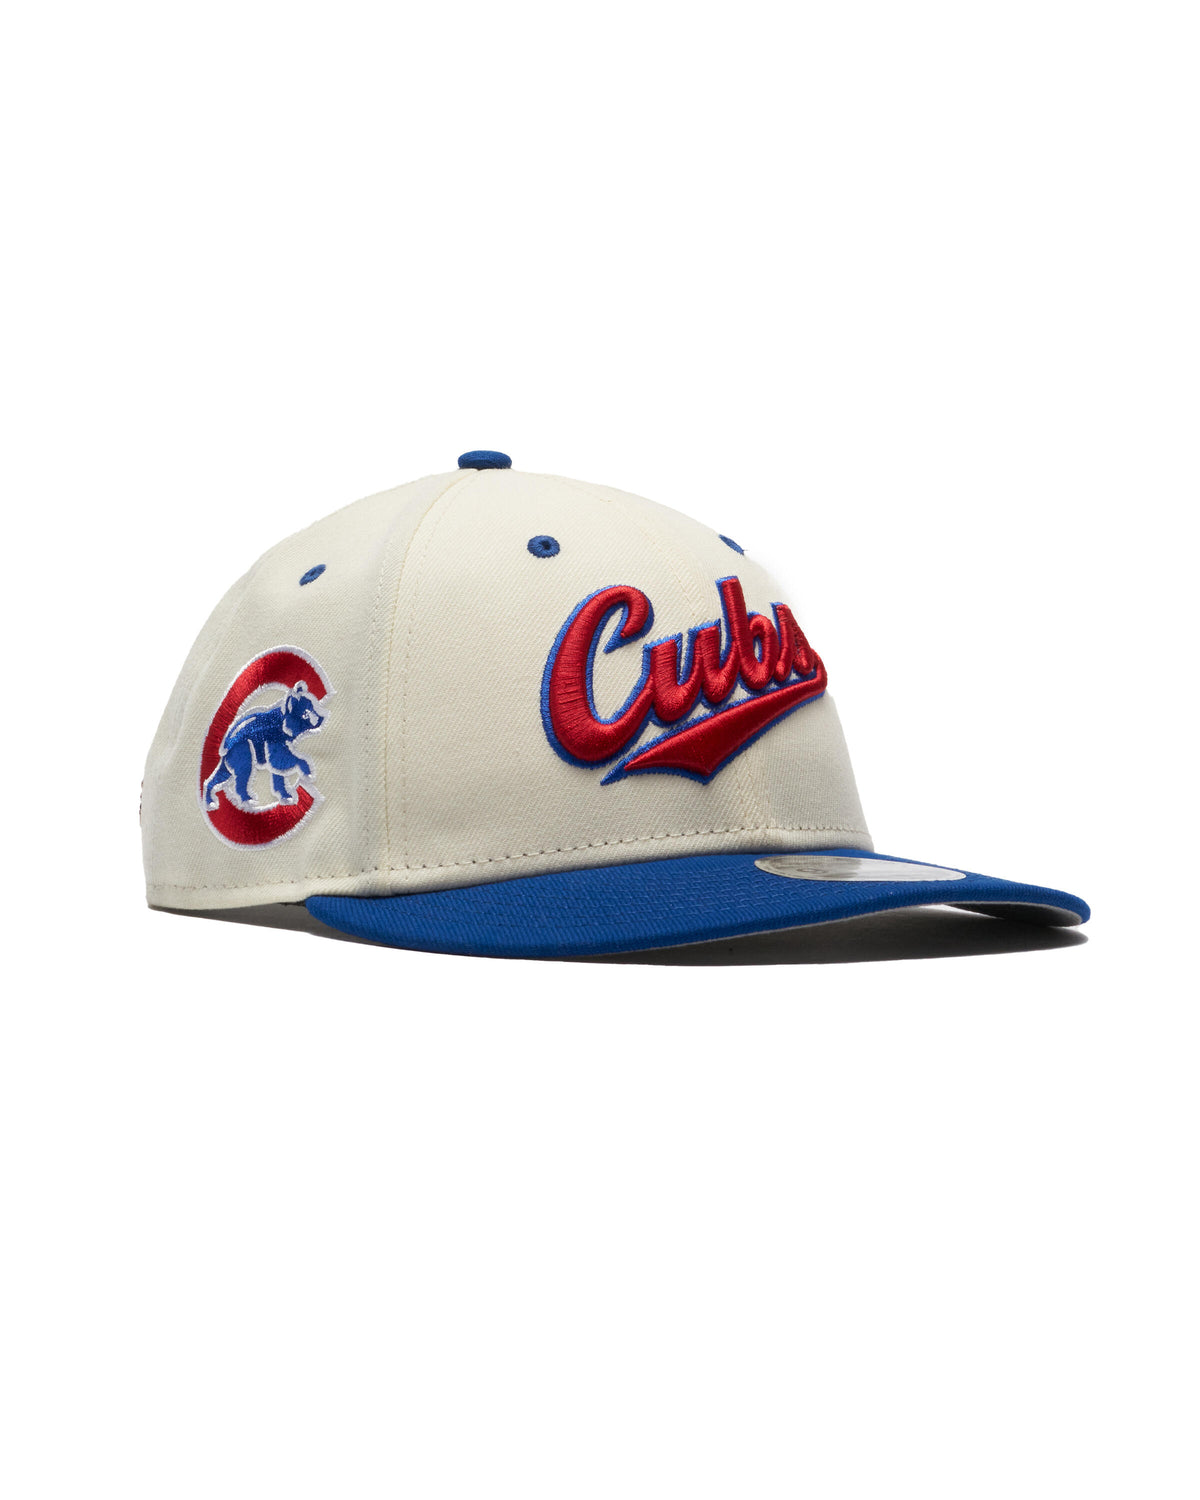 New Era x FELT 9FIFTY Cap 'Chicago Cubs'